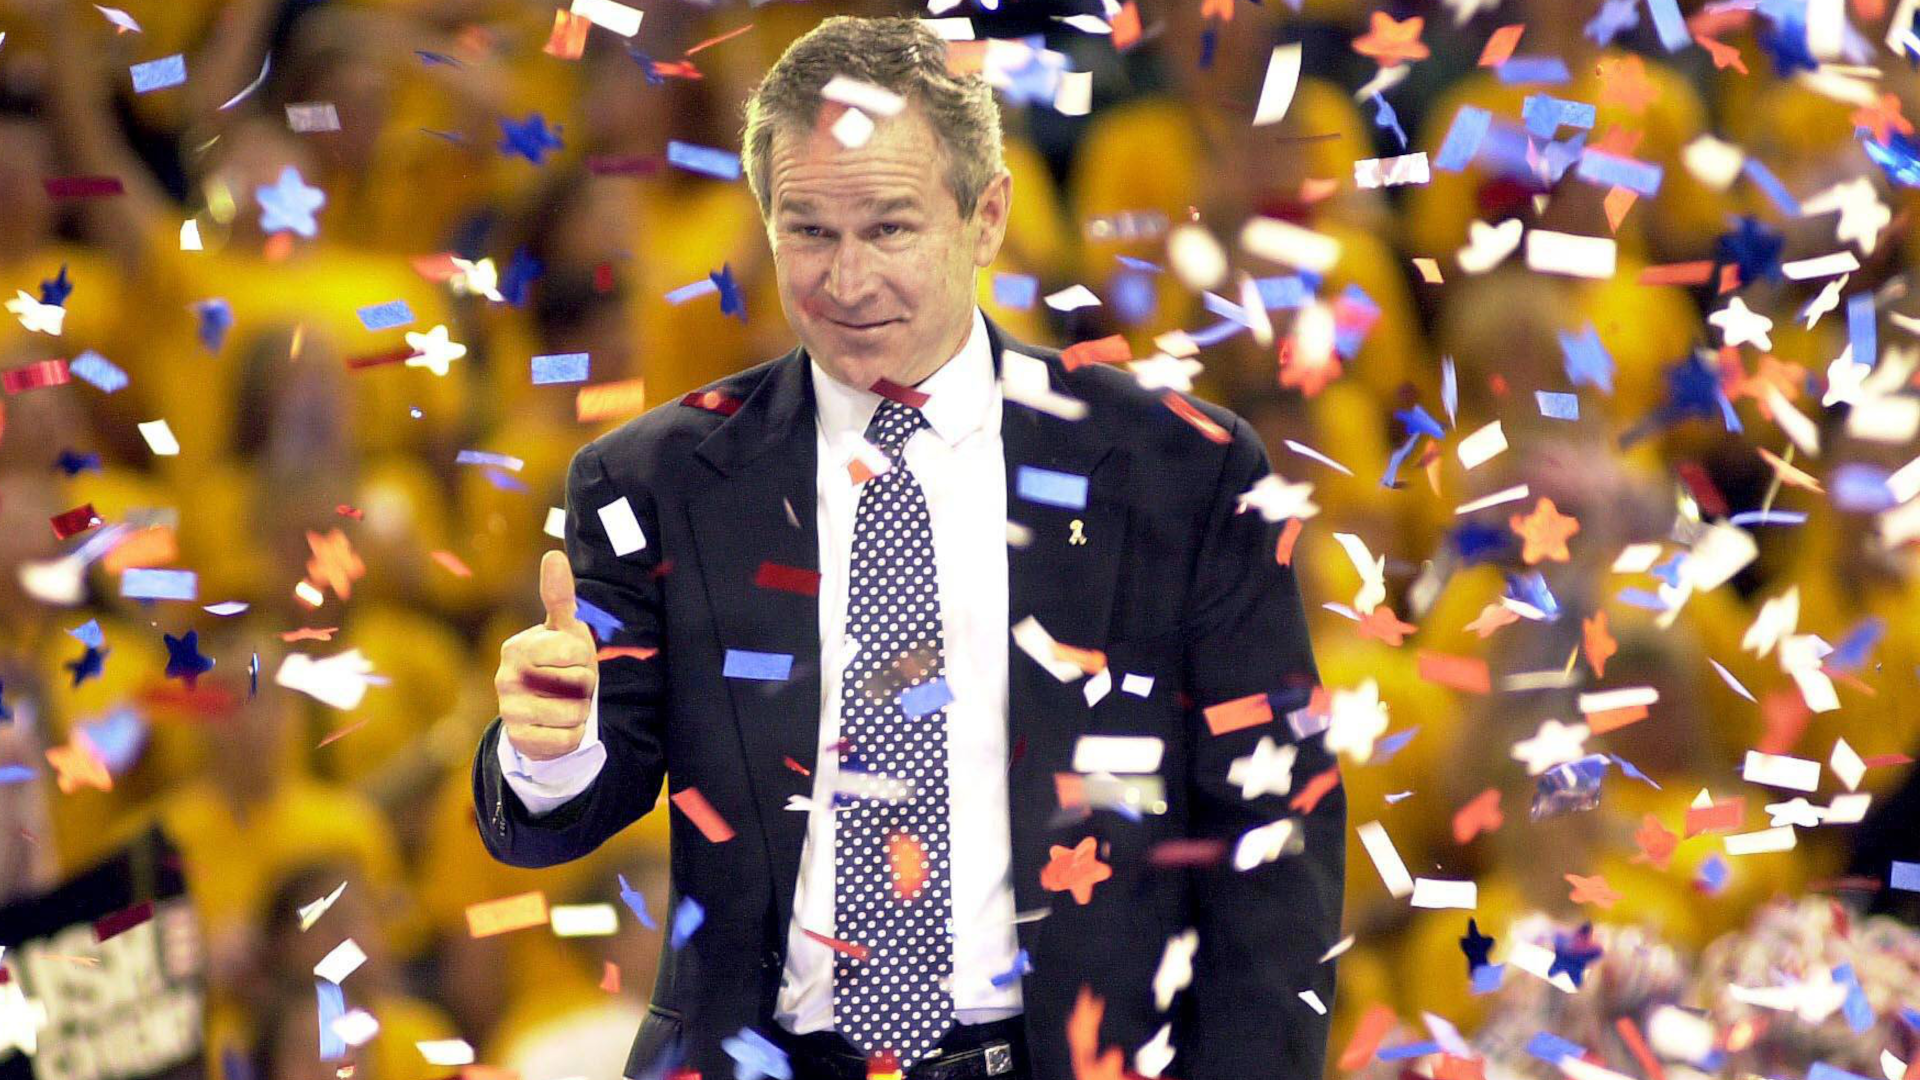 
                <strong>George W. Bush wird erstmals Präsident der USA</strong><br>
                Apropos Politik: Nur einen Tag vor Barcelonas Ausscheiden in der Champions-League-Gruppenphase wurde George W. Bush erstmals zum Präsidenten der Vereinigten Staaten gewählt.
              